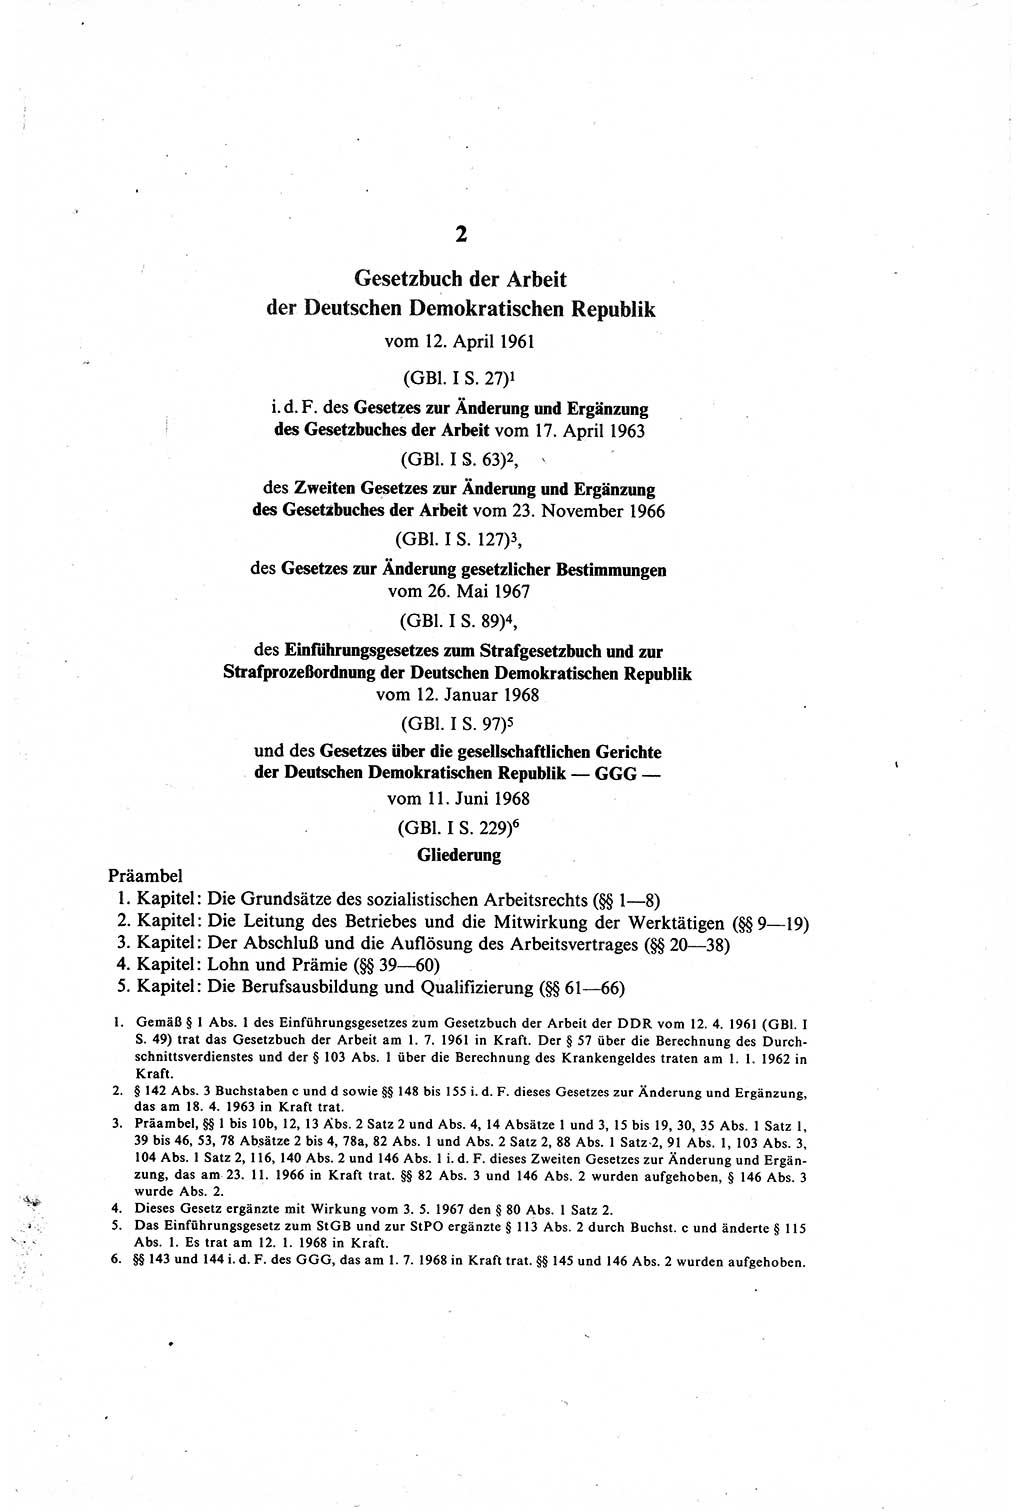 Gesetzbuch der Arbeit (GBA) und andere ausgewählte rechtliche Bestimmungen [Deutsche Demokratische Republik (DDR)] 1968, Seite 21 (GBA DDR 1968, S. 21)